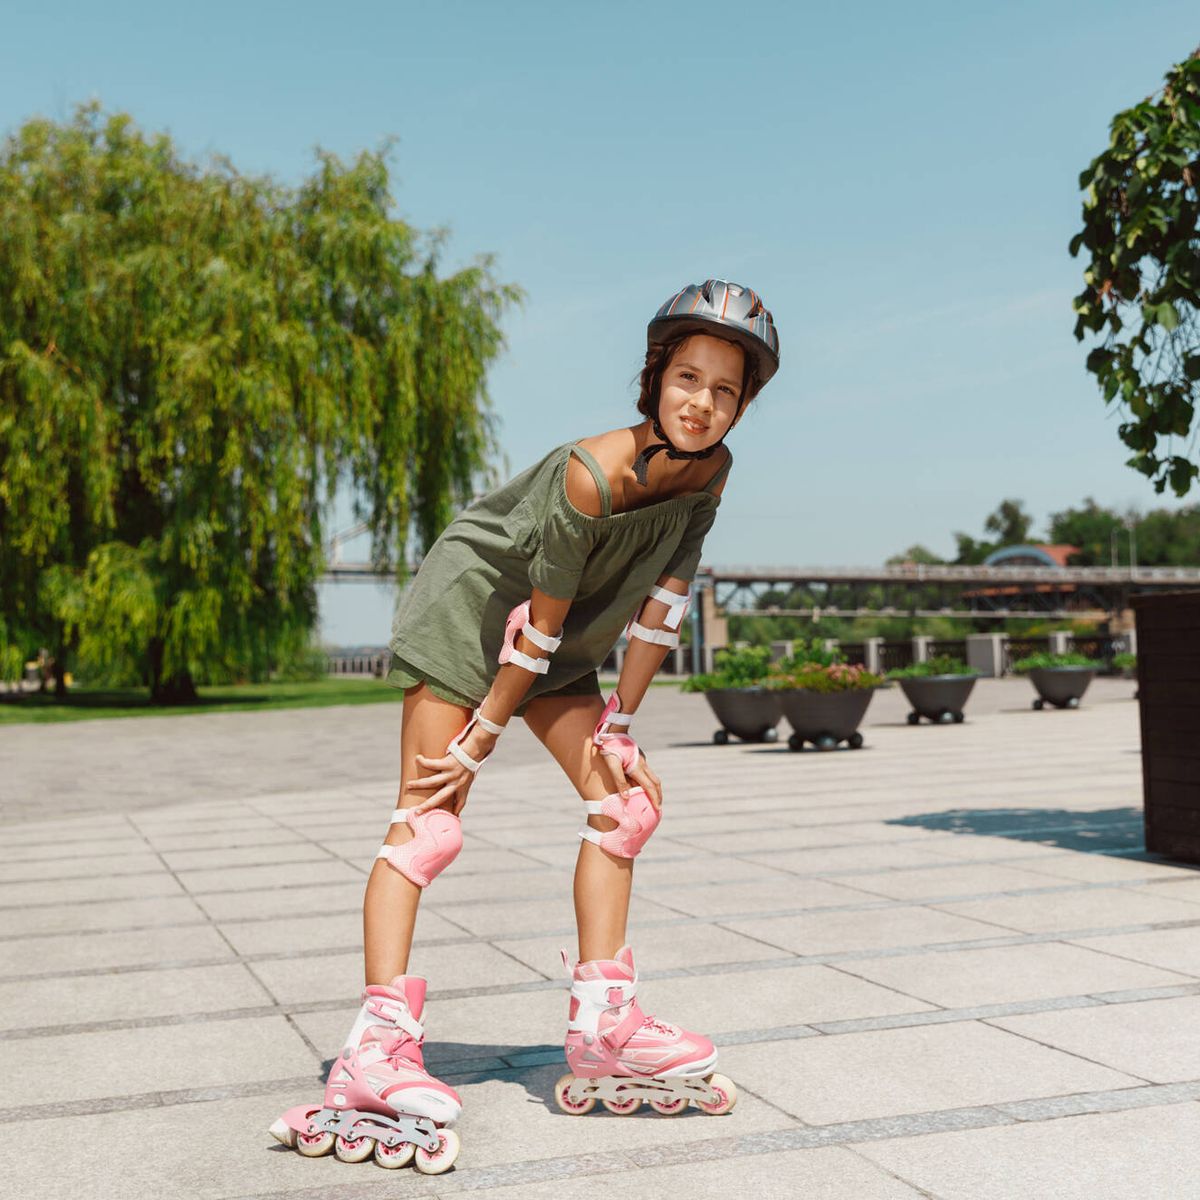 Estos son los mejores patines en línea para niños y adultos (2020